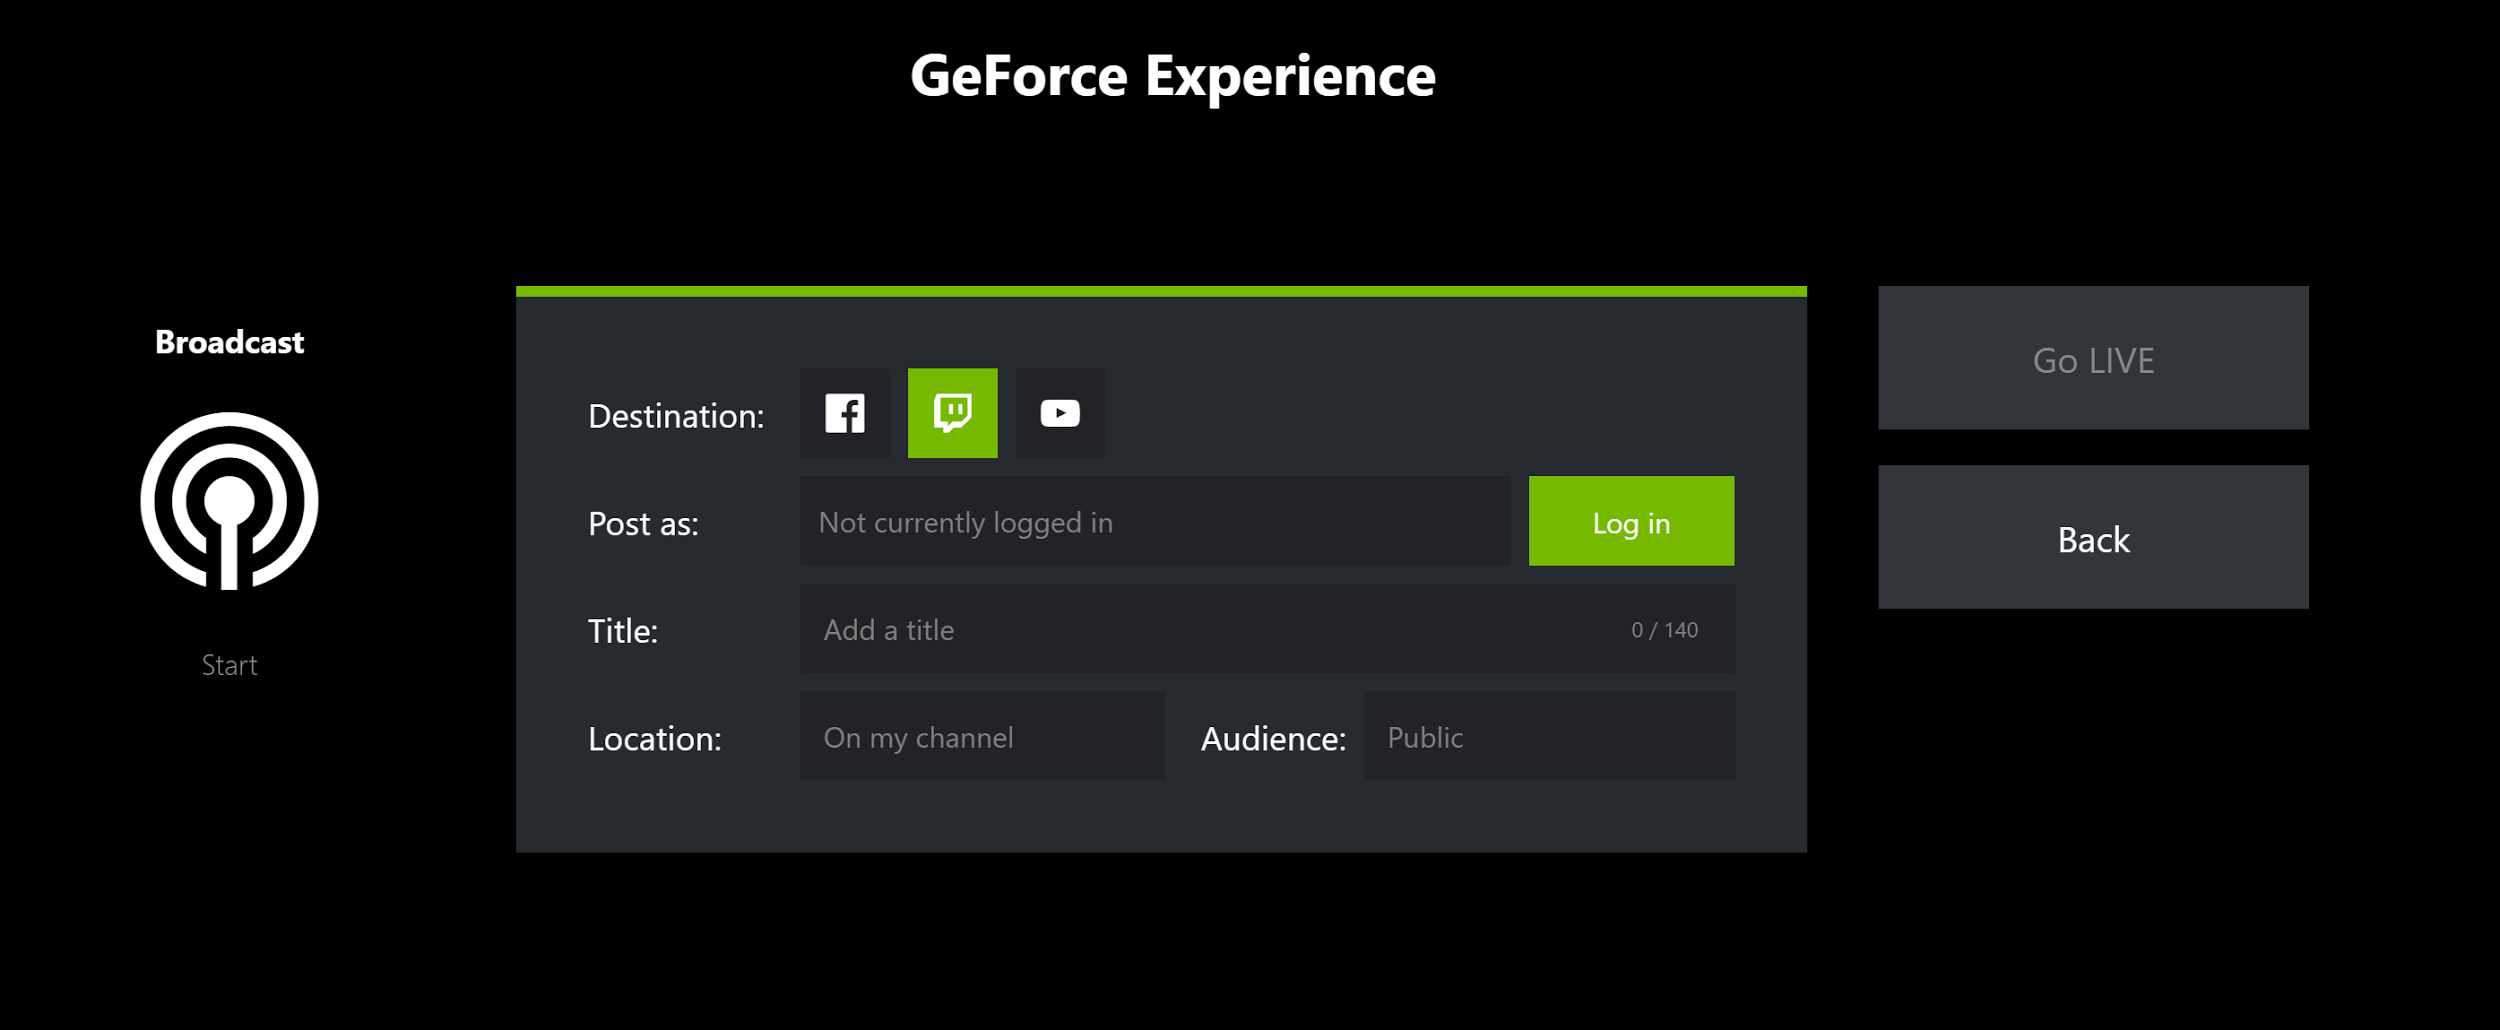 Geforce Experience Broadcasting Tutorial Geforce